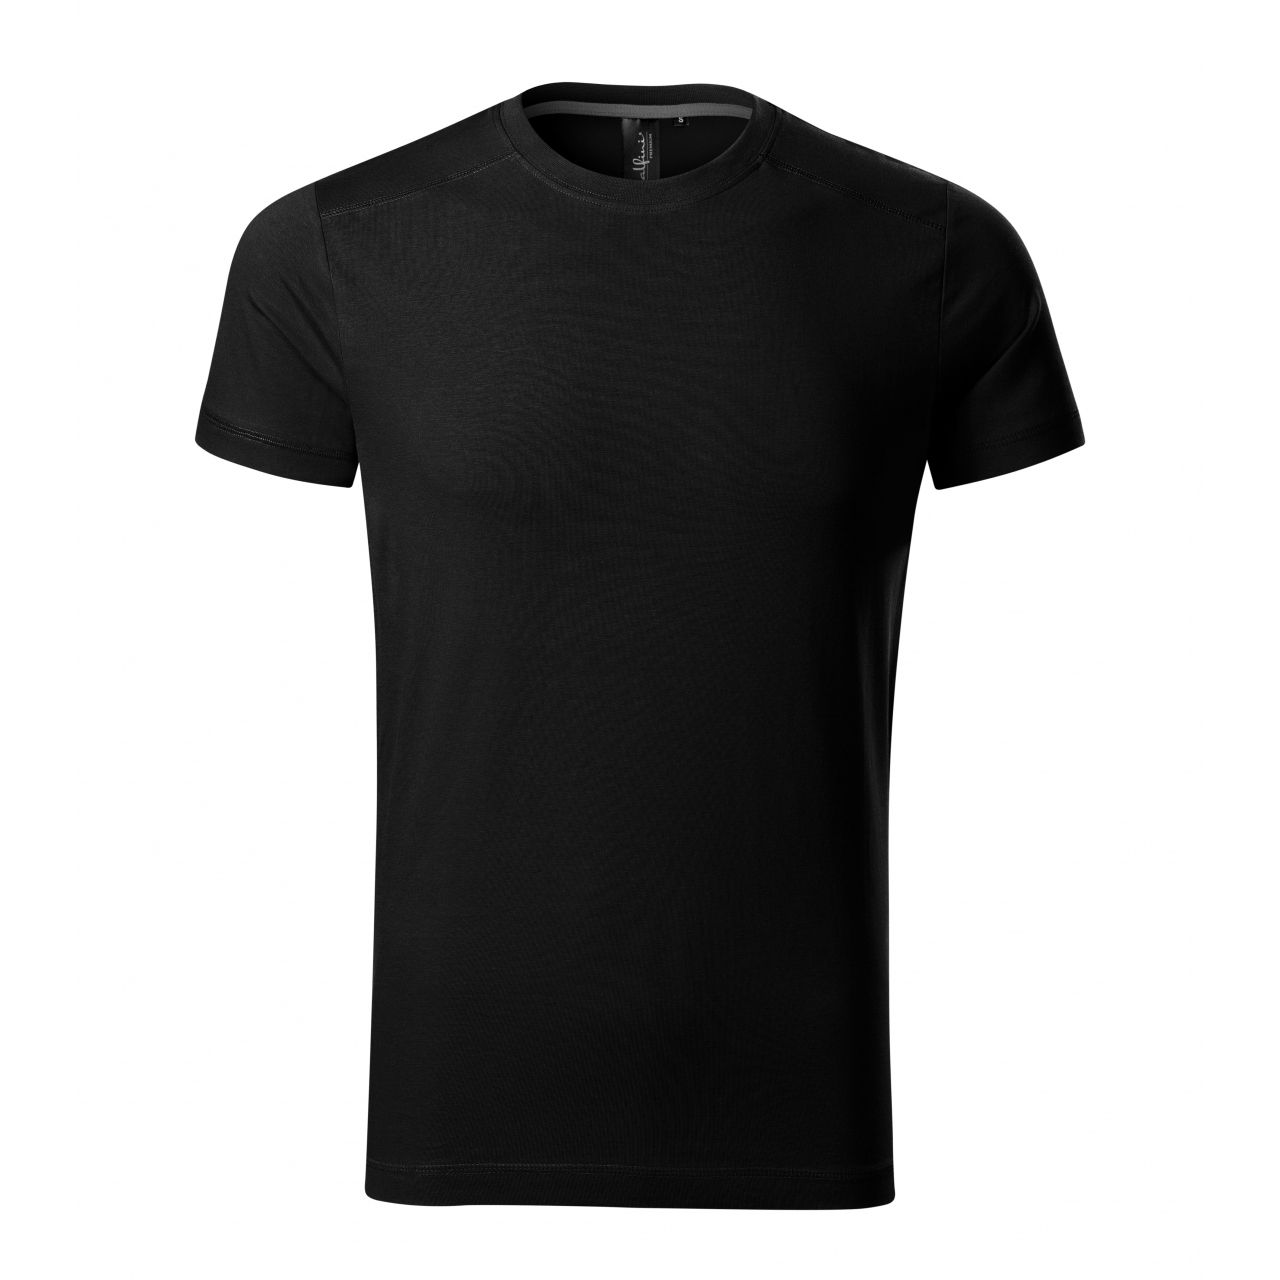 Tričko pánské Malfini Action - černé, XL